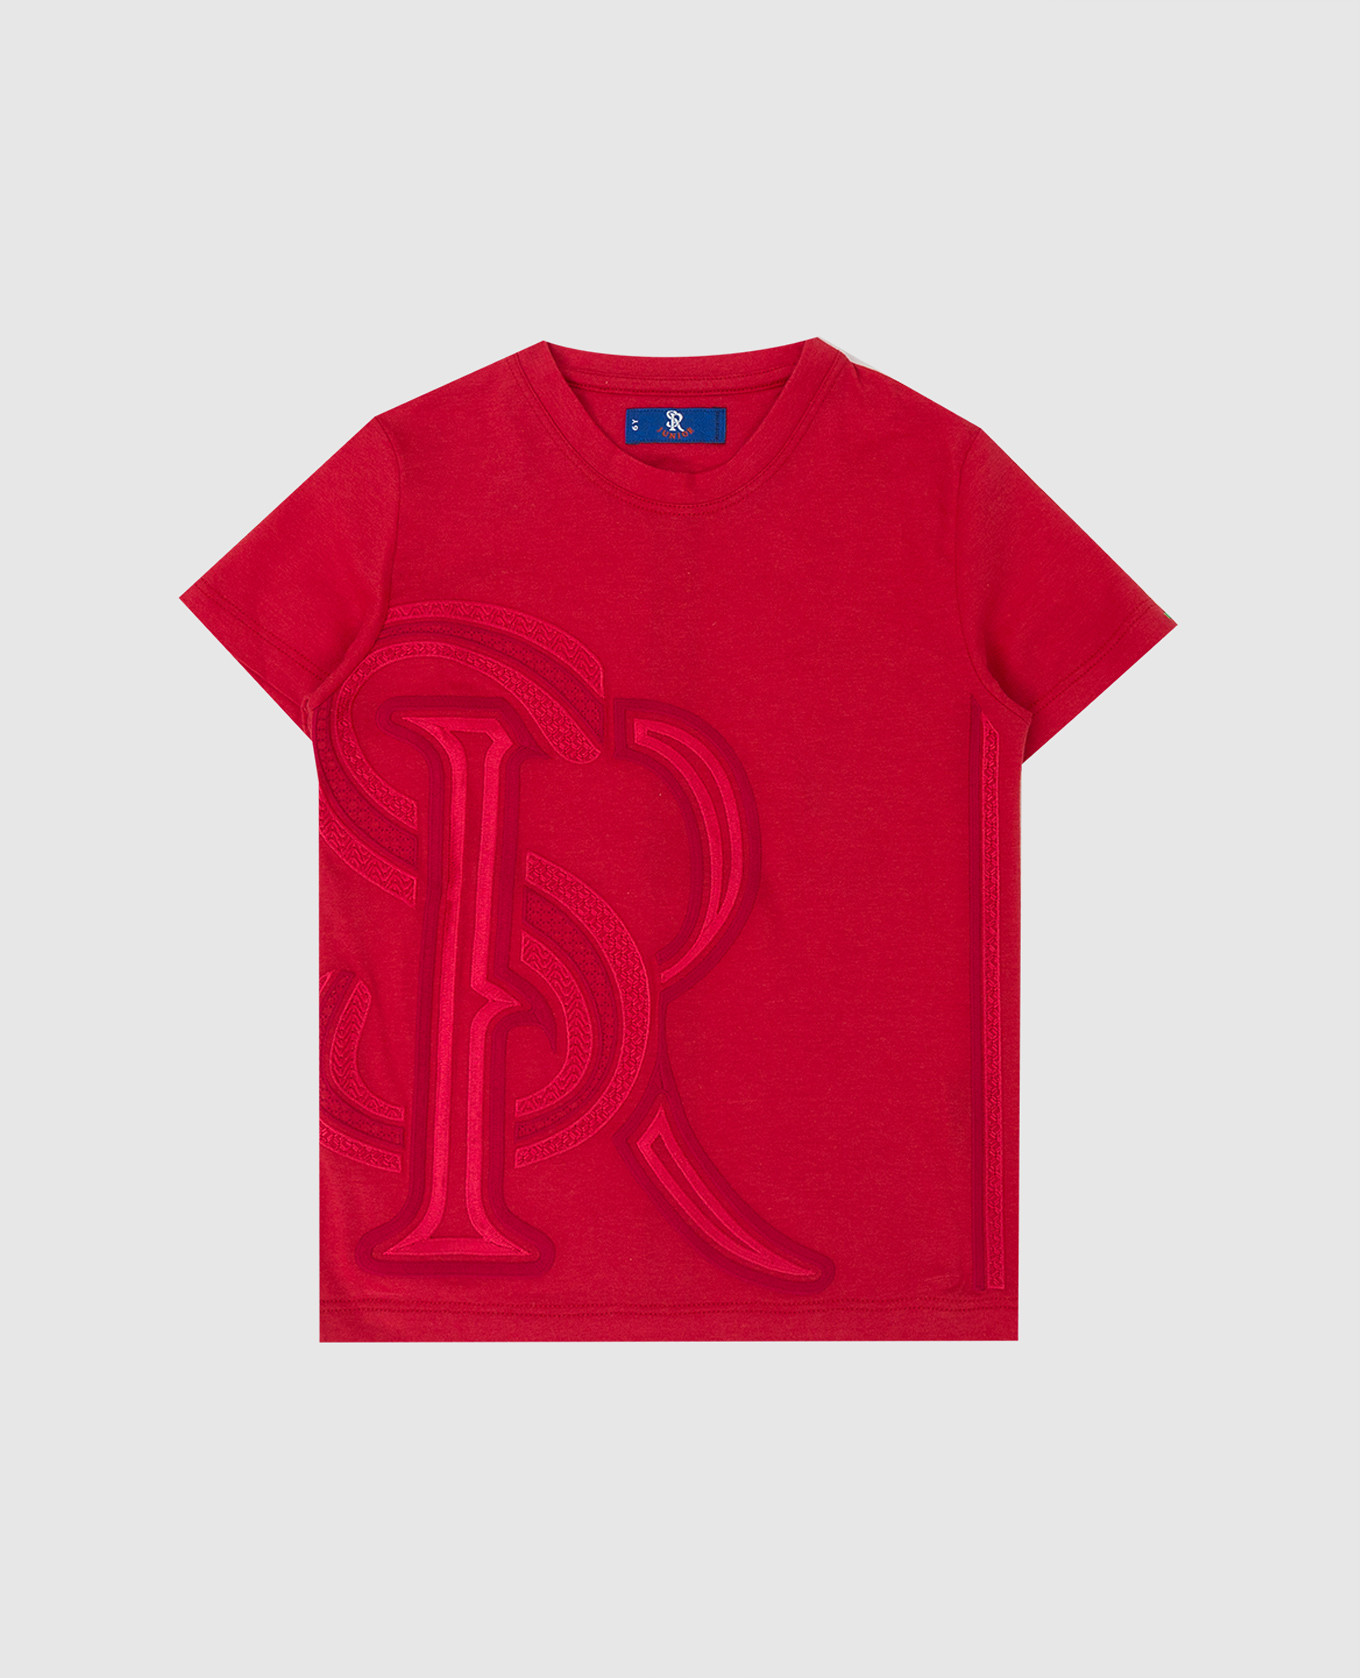 Детская красная футболка с вышивкой монограммы